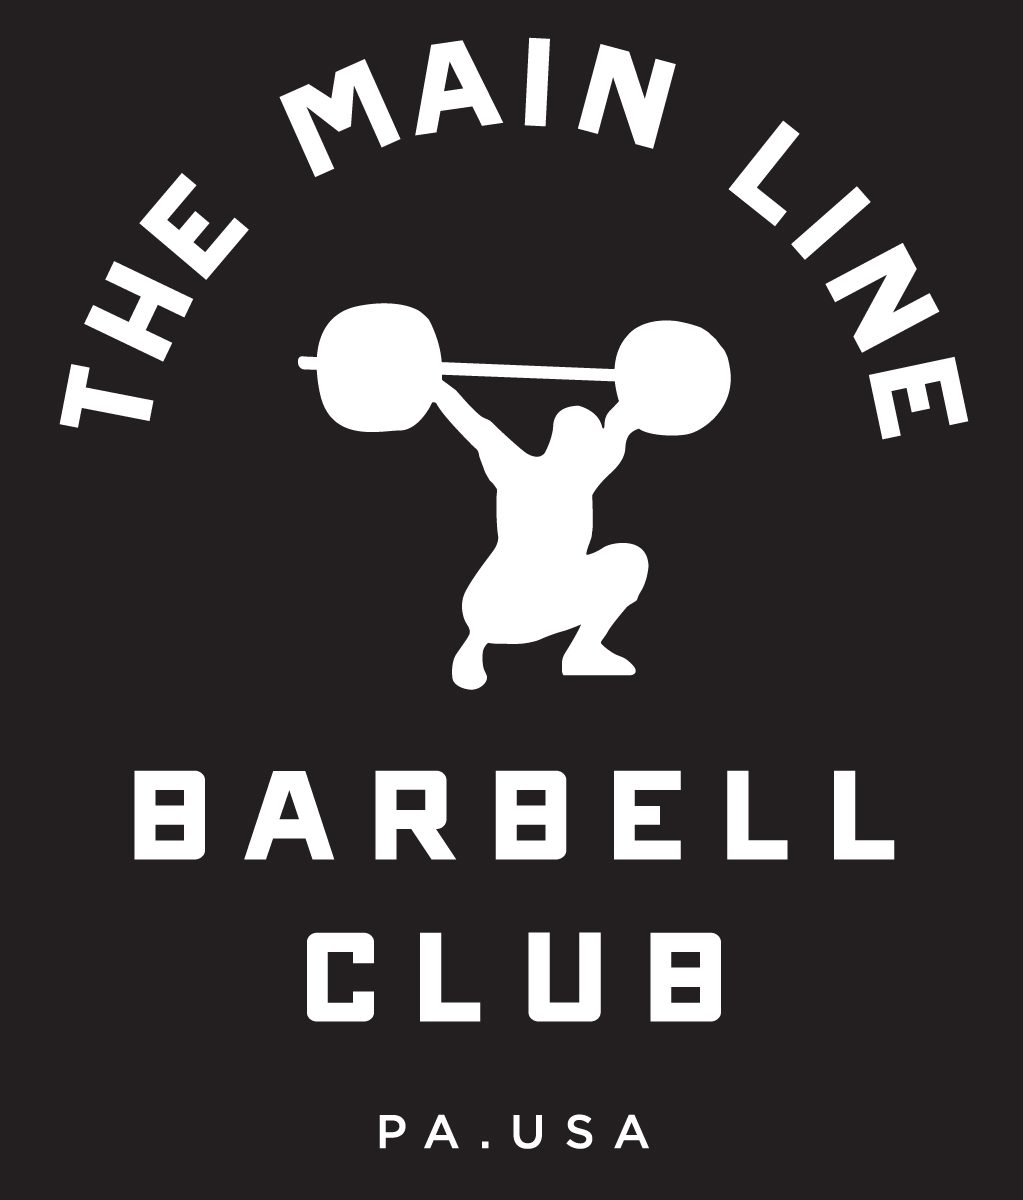 Week of 7.18.16 Barbell Club